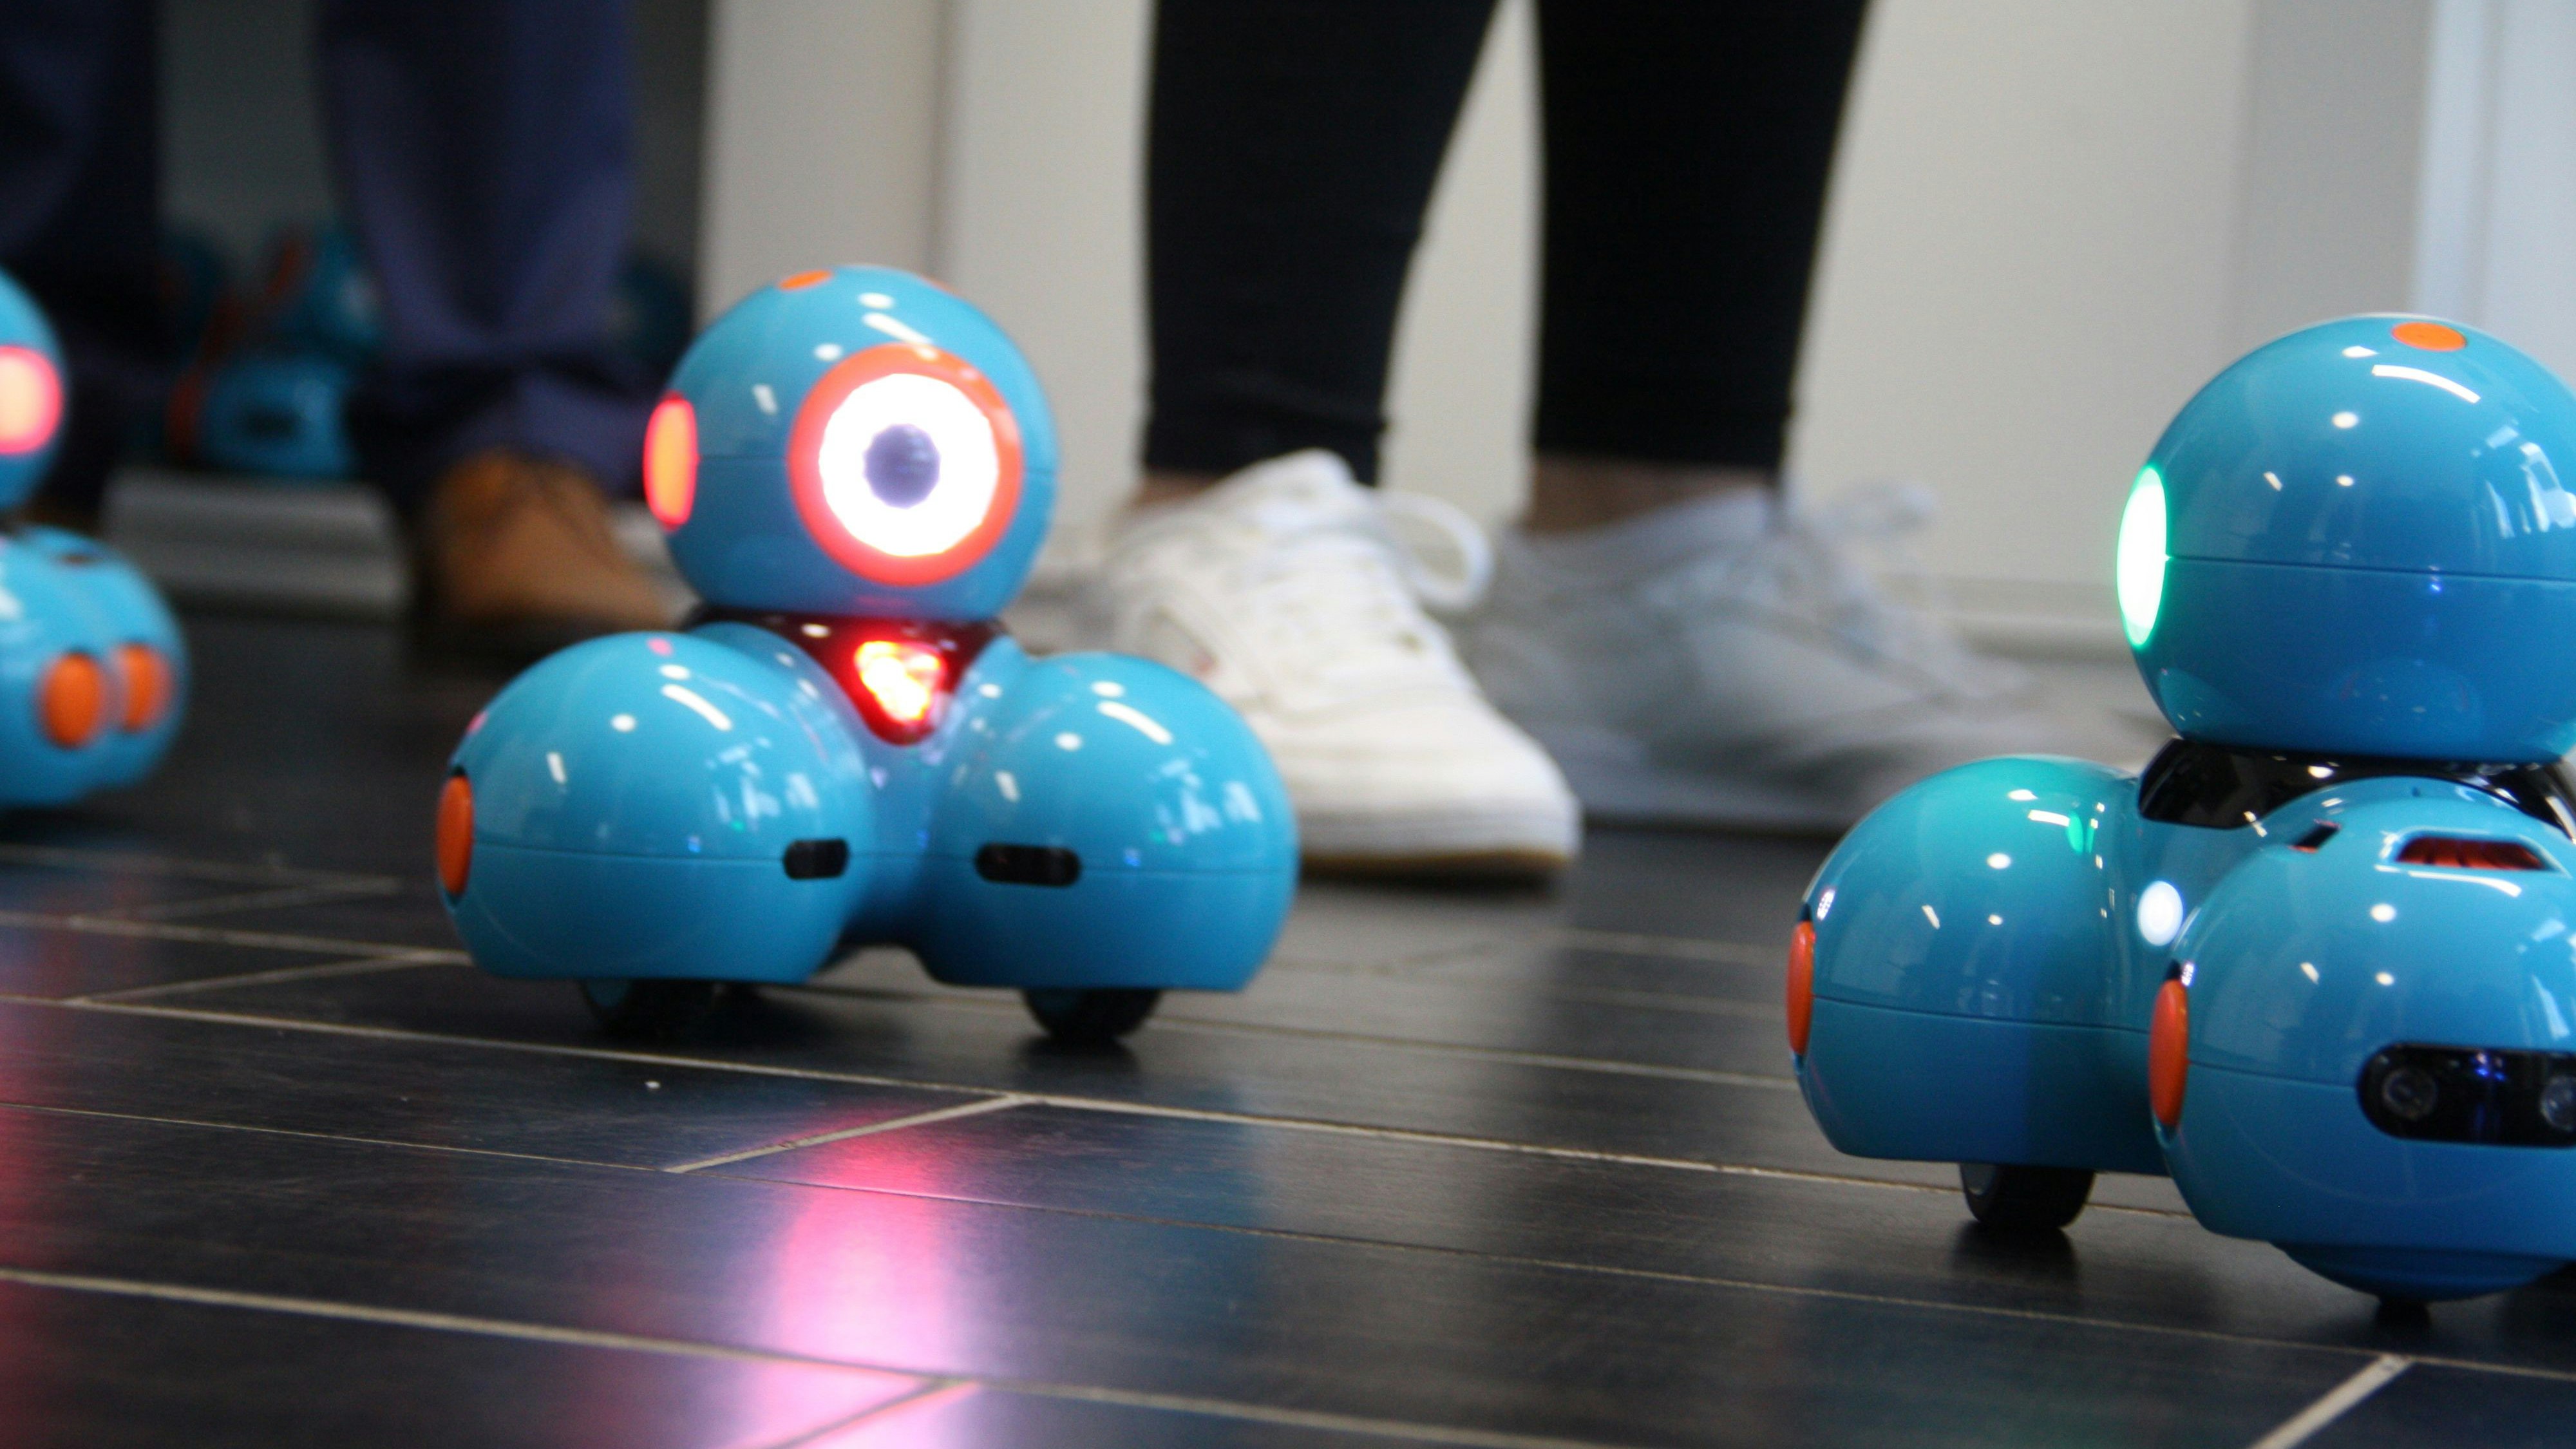 Kleiner Roboter mit großer Wirkung: Die 12 Lernroboter des RoboLabs sollen spielerisch den Umgang mit Robotertechnologie erleichtern und Berührungsängste nehmen. Foto: Technow